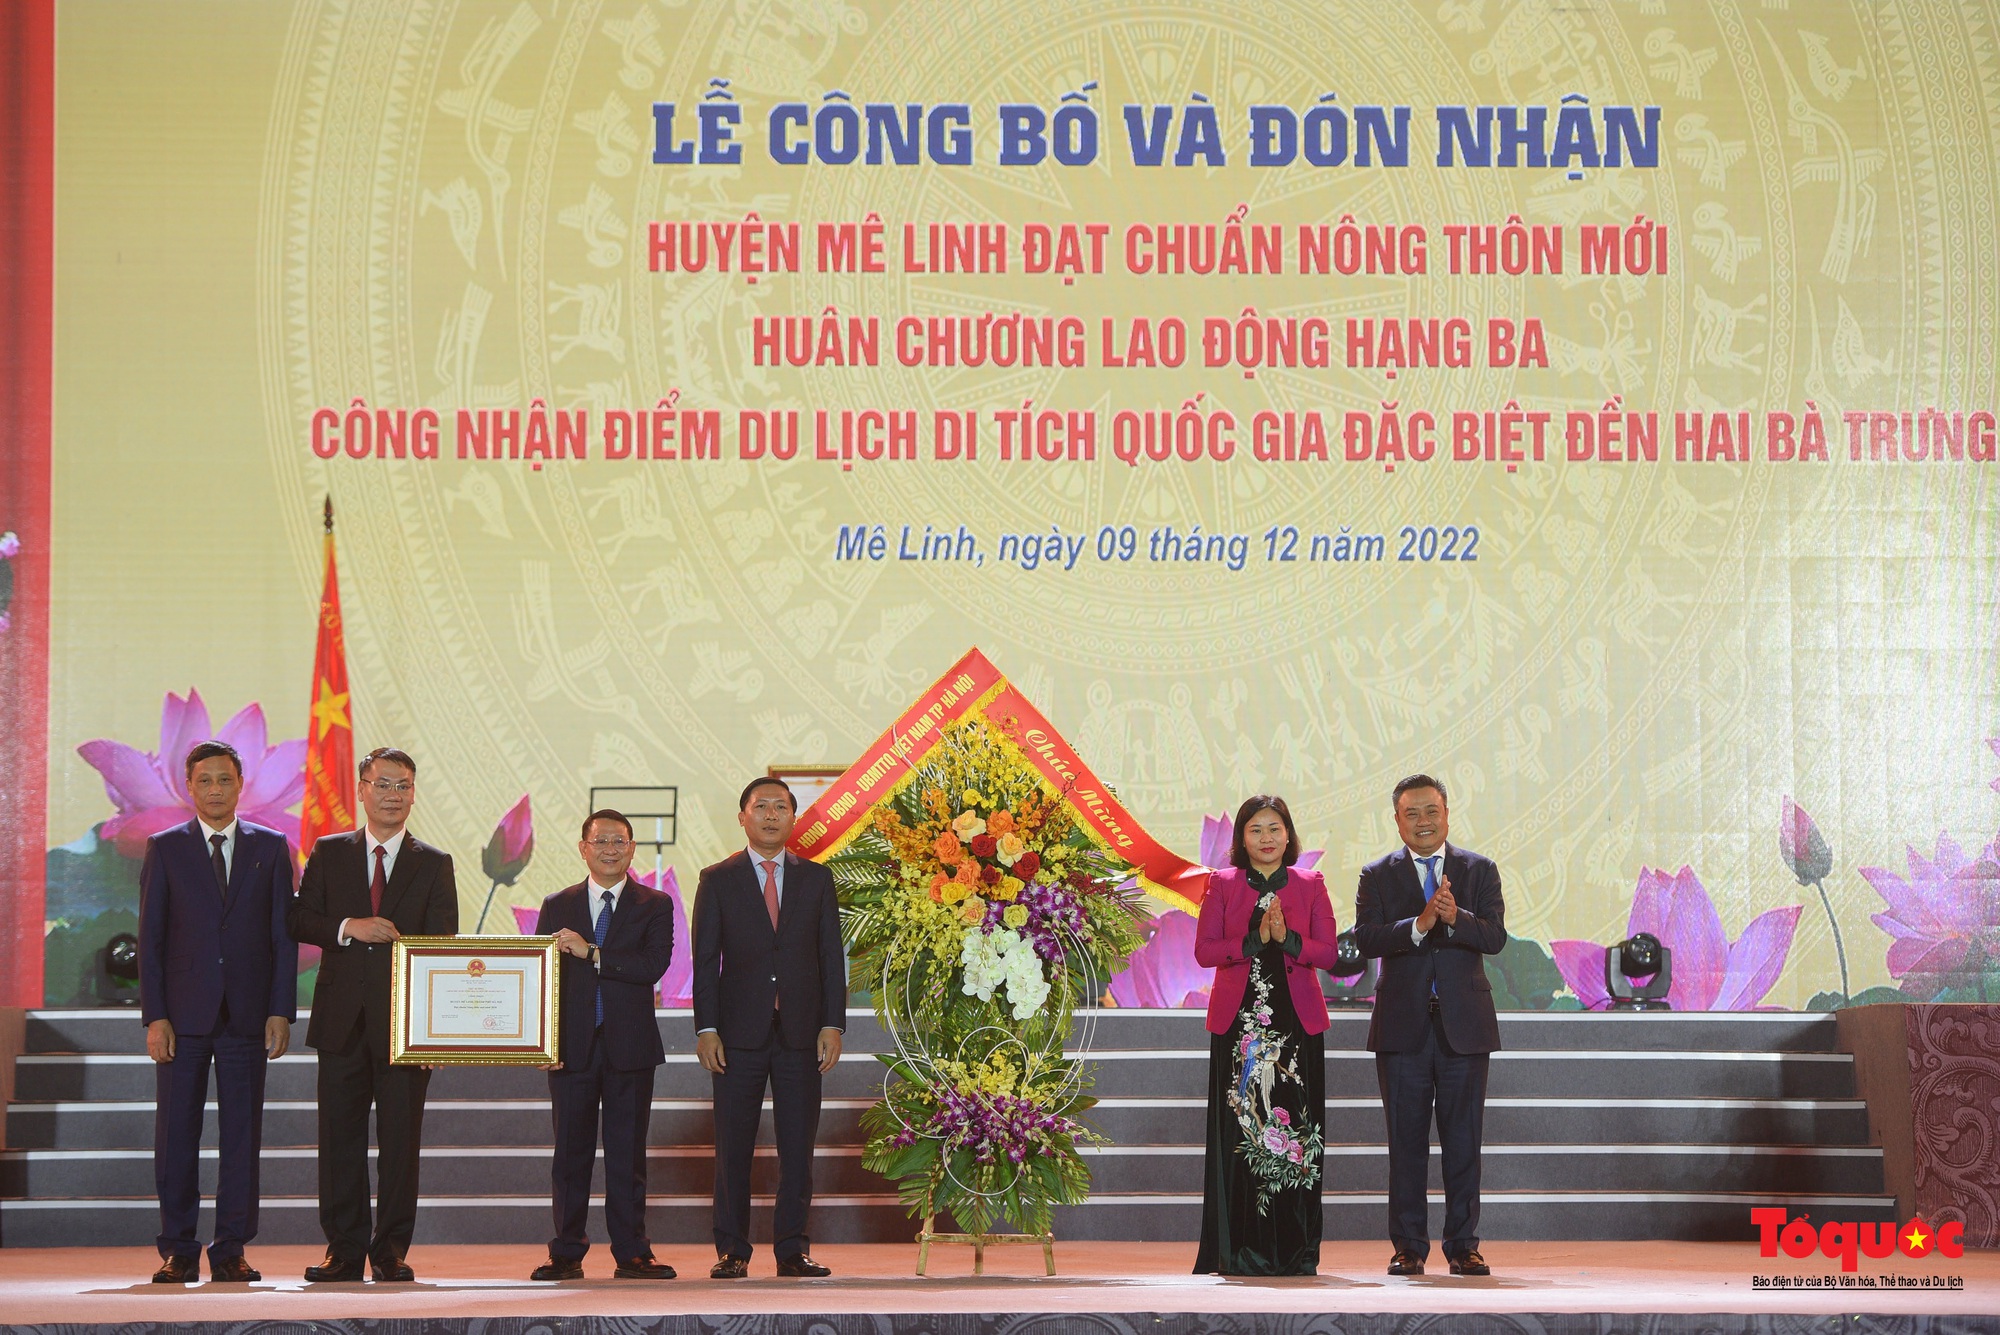 Hà Nội: Huyện Mê Linh đón nhận danh hiệu đạt chuẩn nông thôn mới và đón nhận Huân chương Lao động hạng Ba - Ảnh 18.